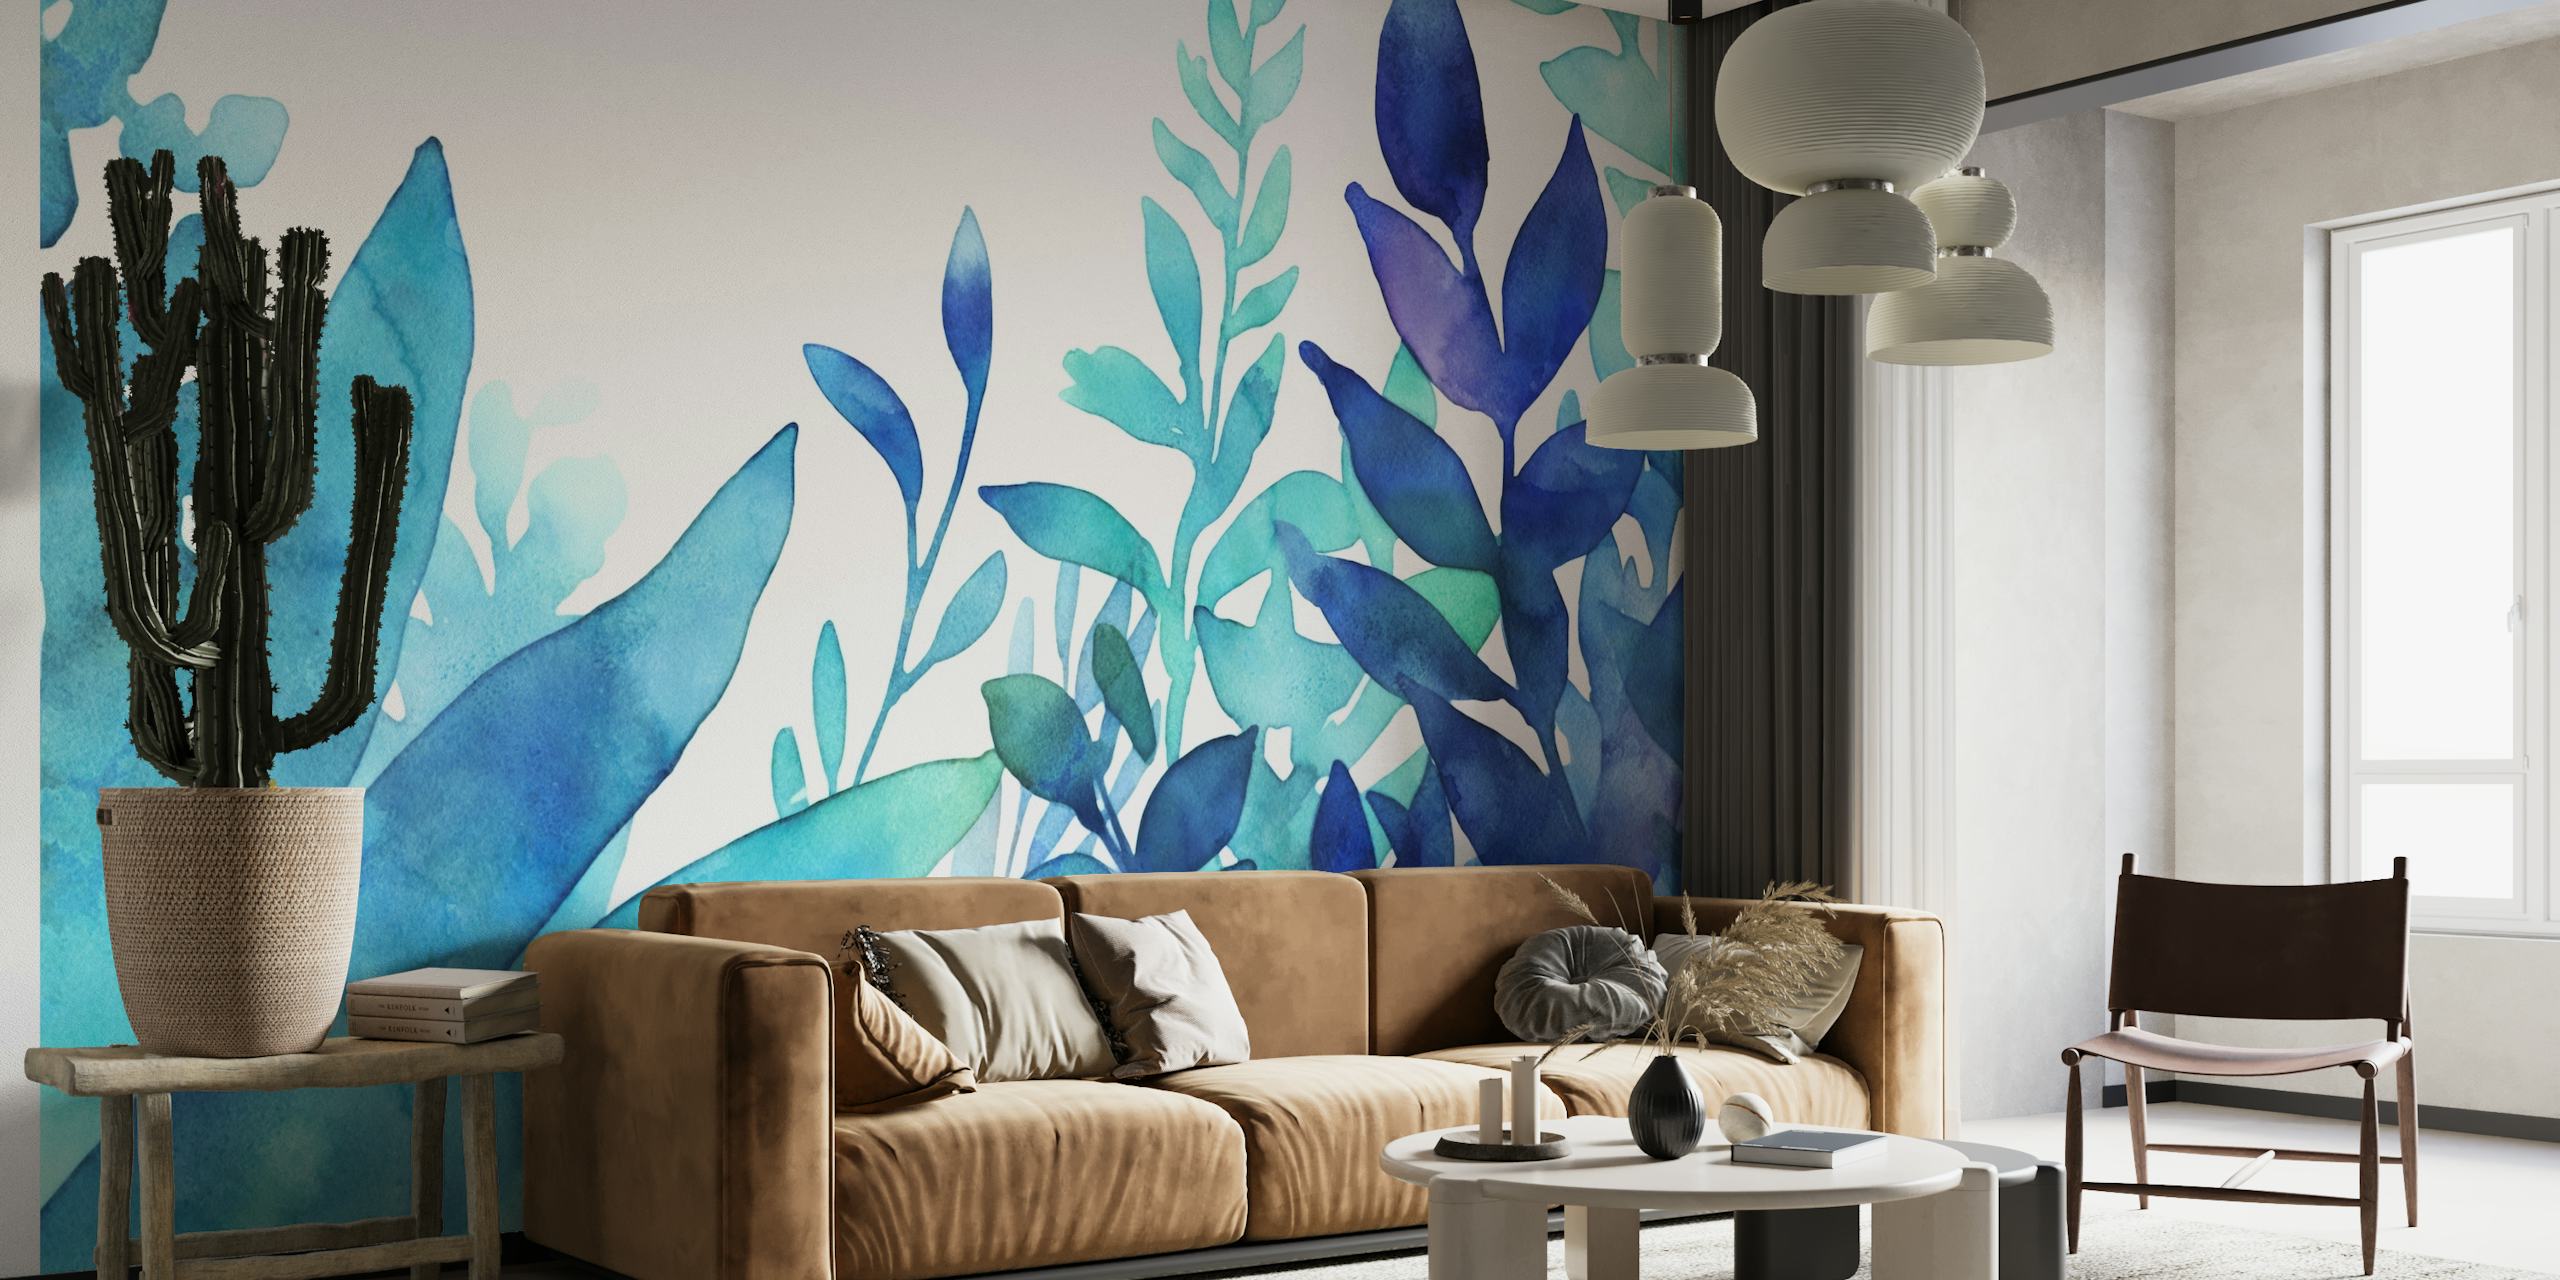 Un affichage luxuriant de feuillage aquarelle turquoise et bleu pour une fresque murale tranquille.